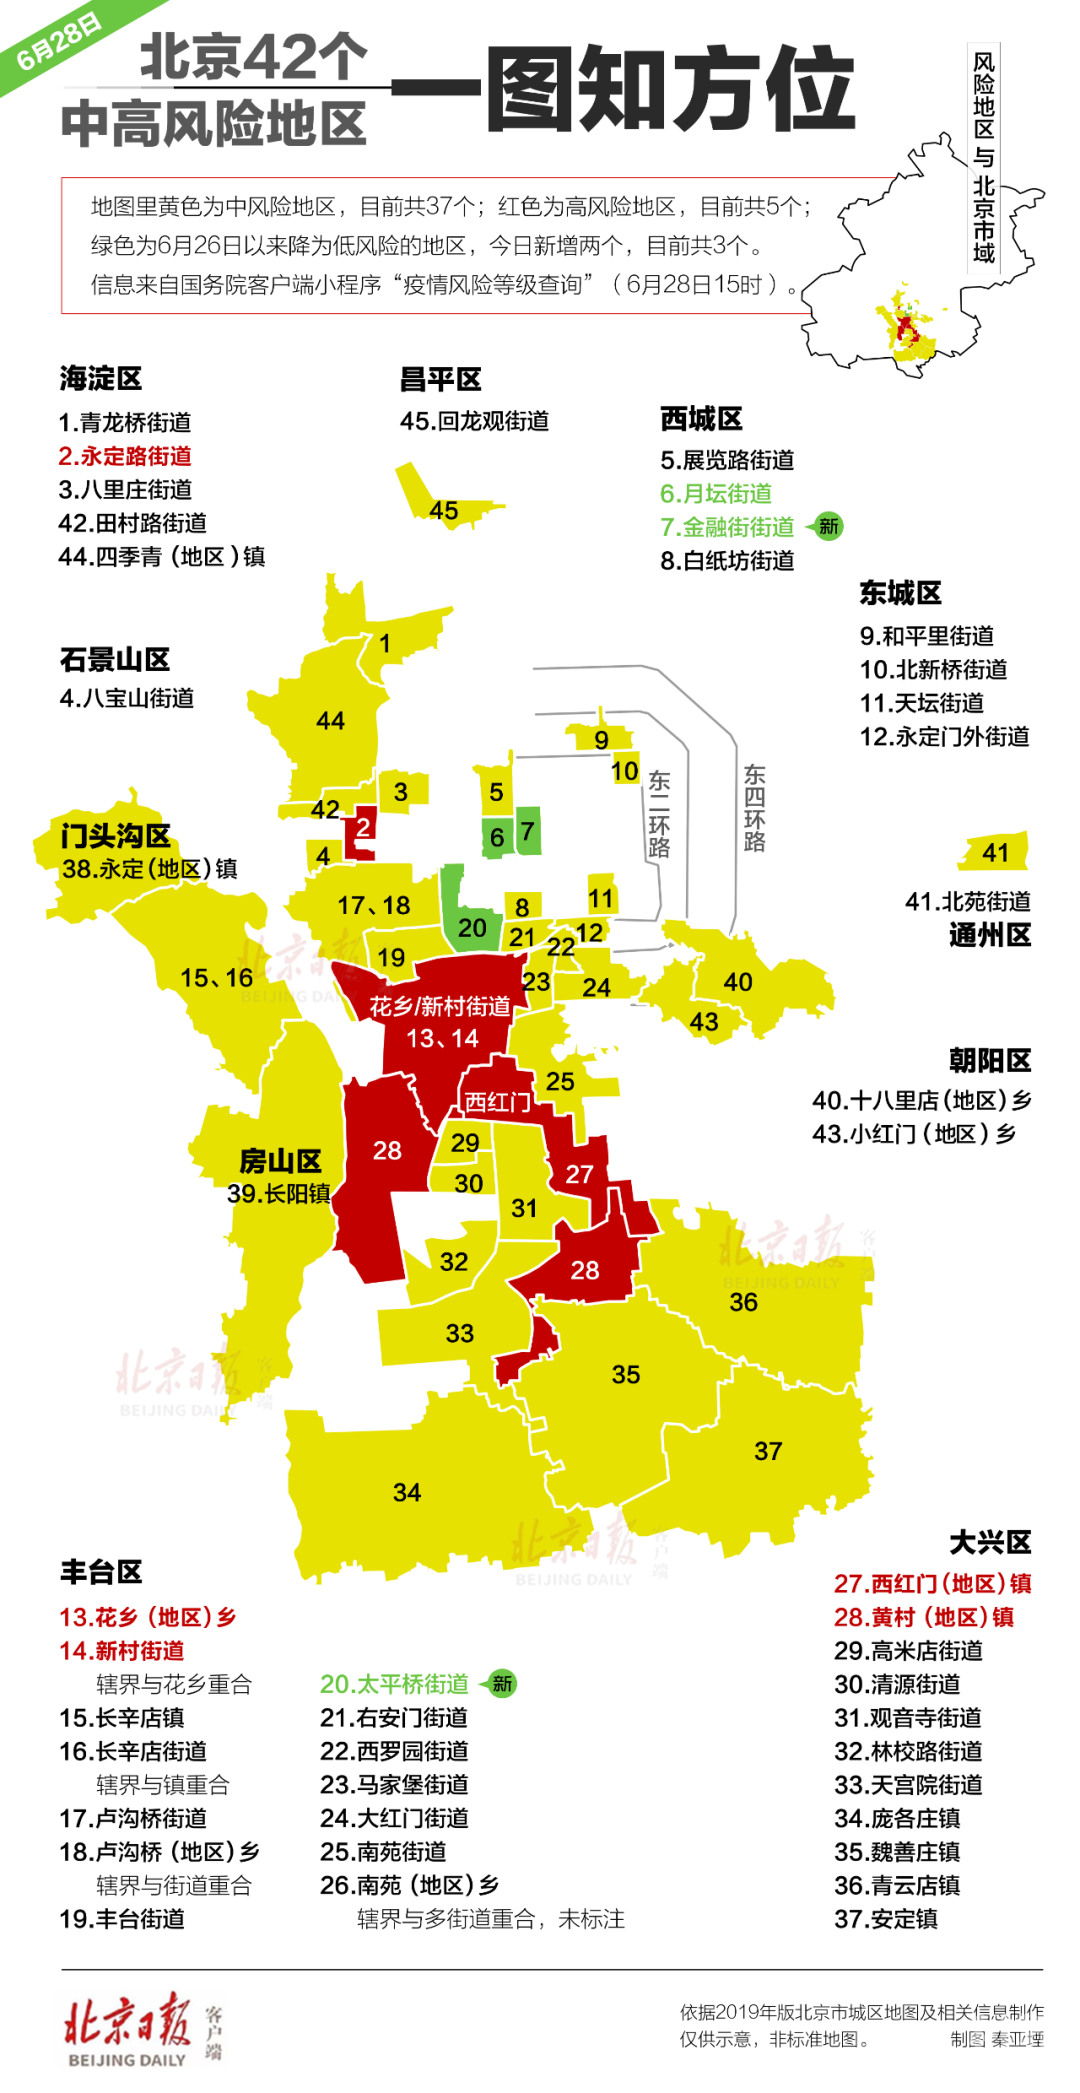 最新北京311例确诊病例一图尽览涉及这些单位小区医院